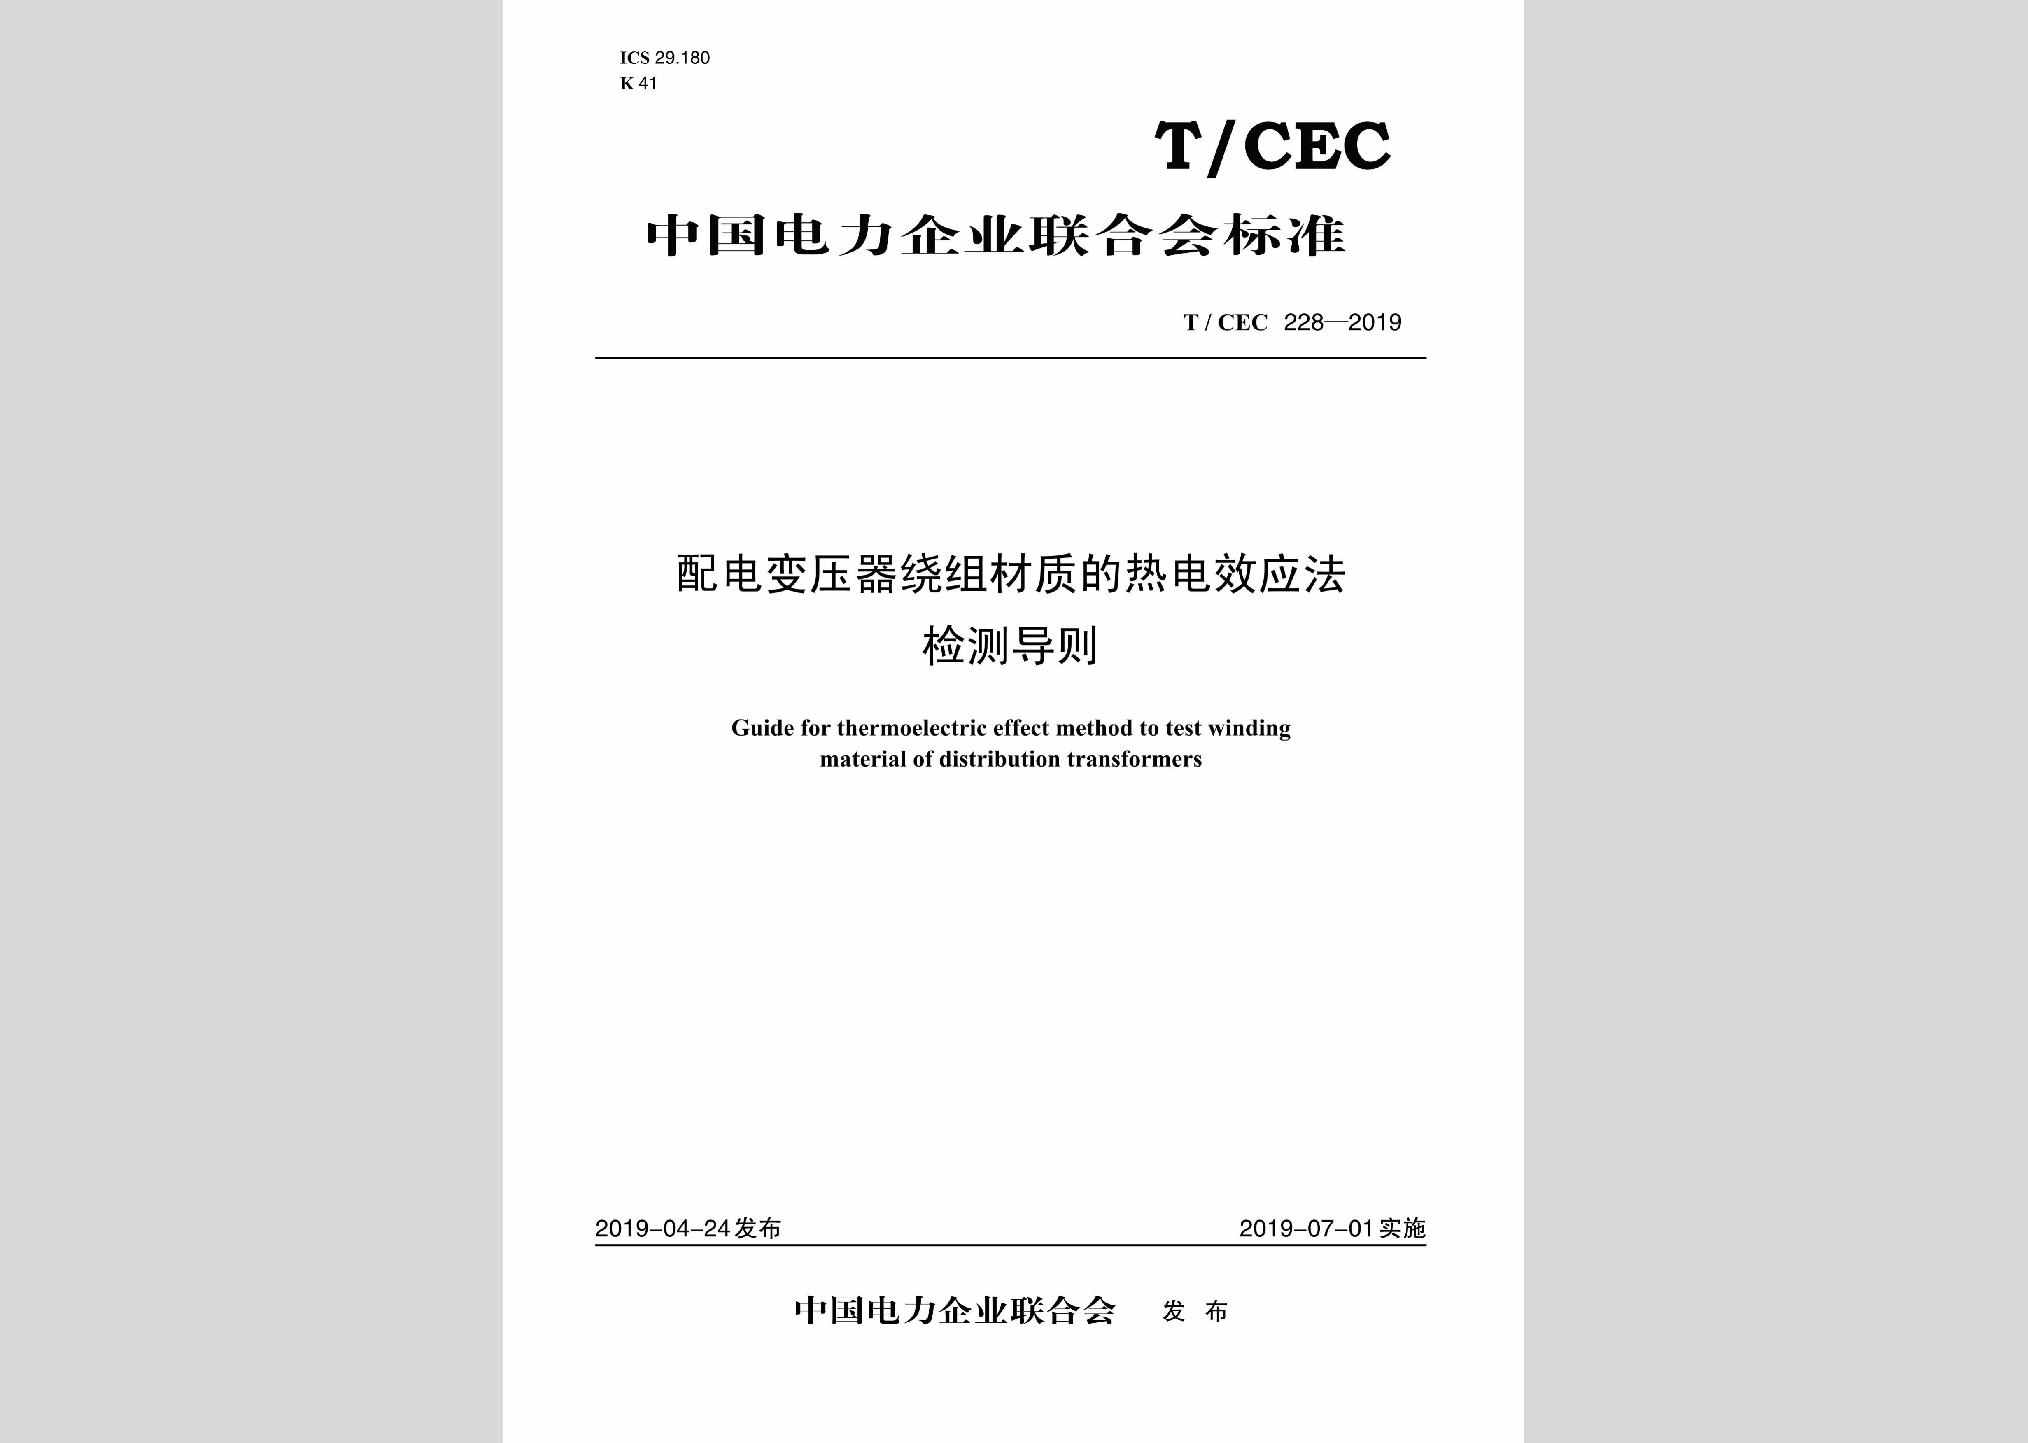 T/CEC228-2019：配电变压器绕组材质的热电效应法检测导则